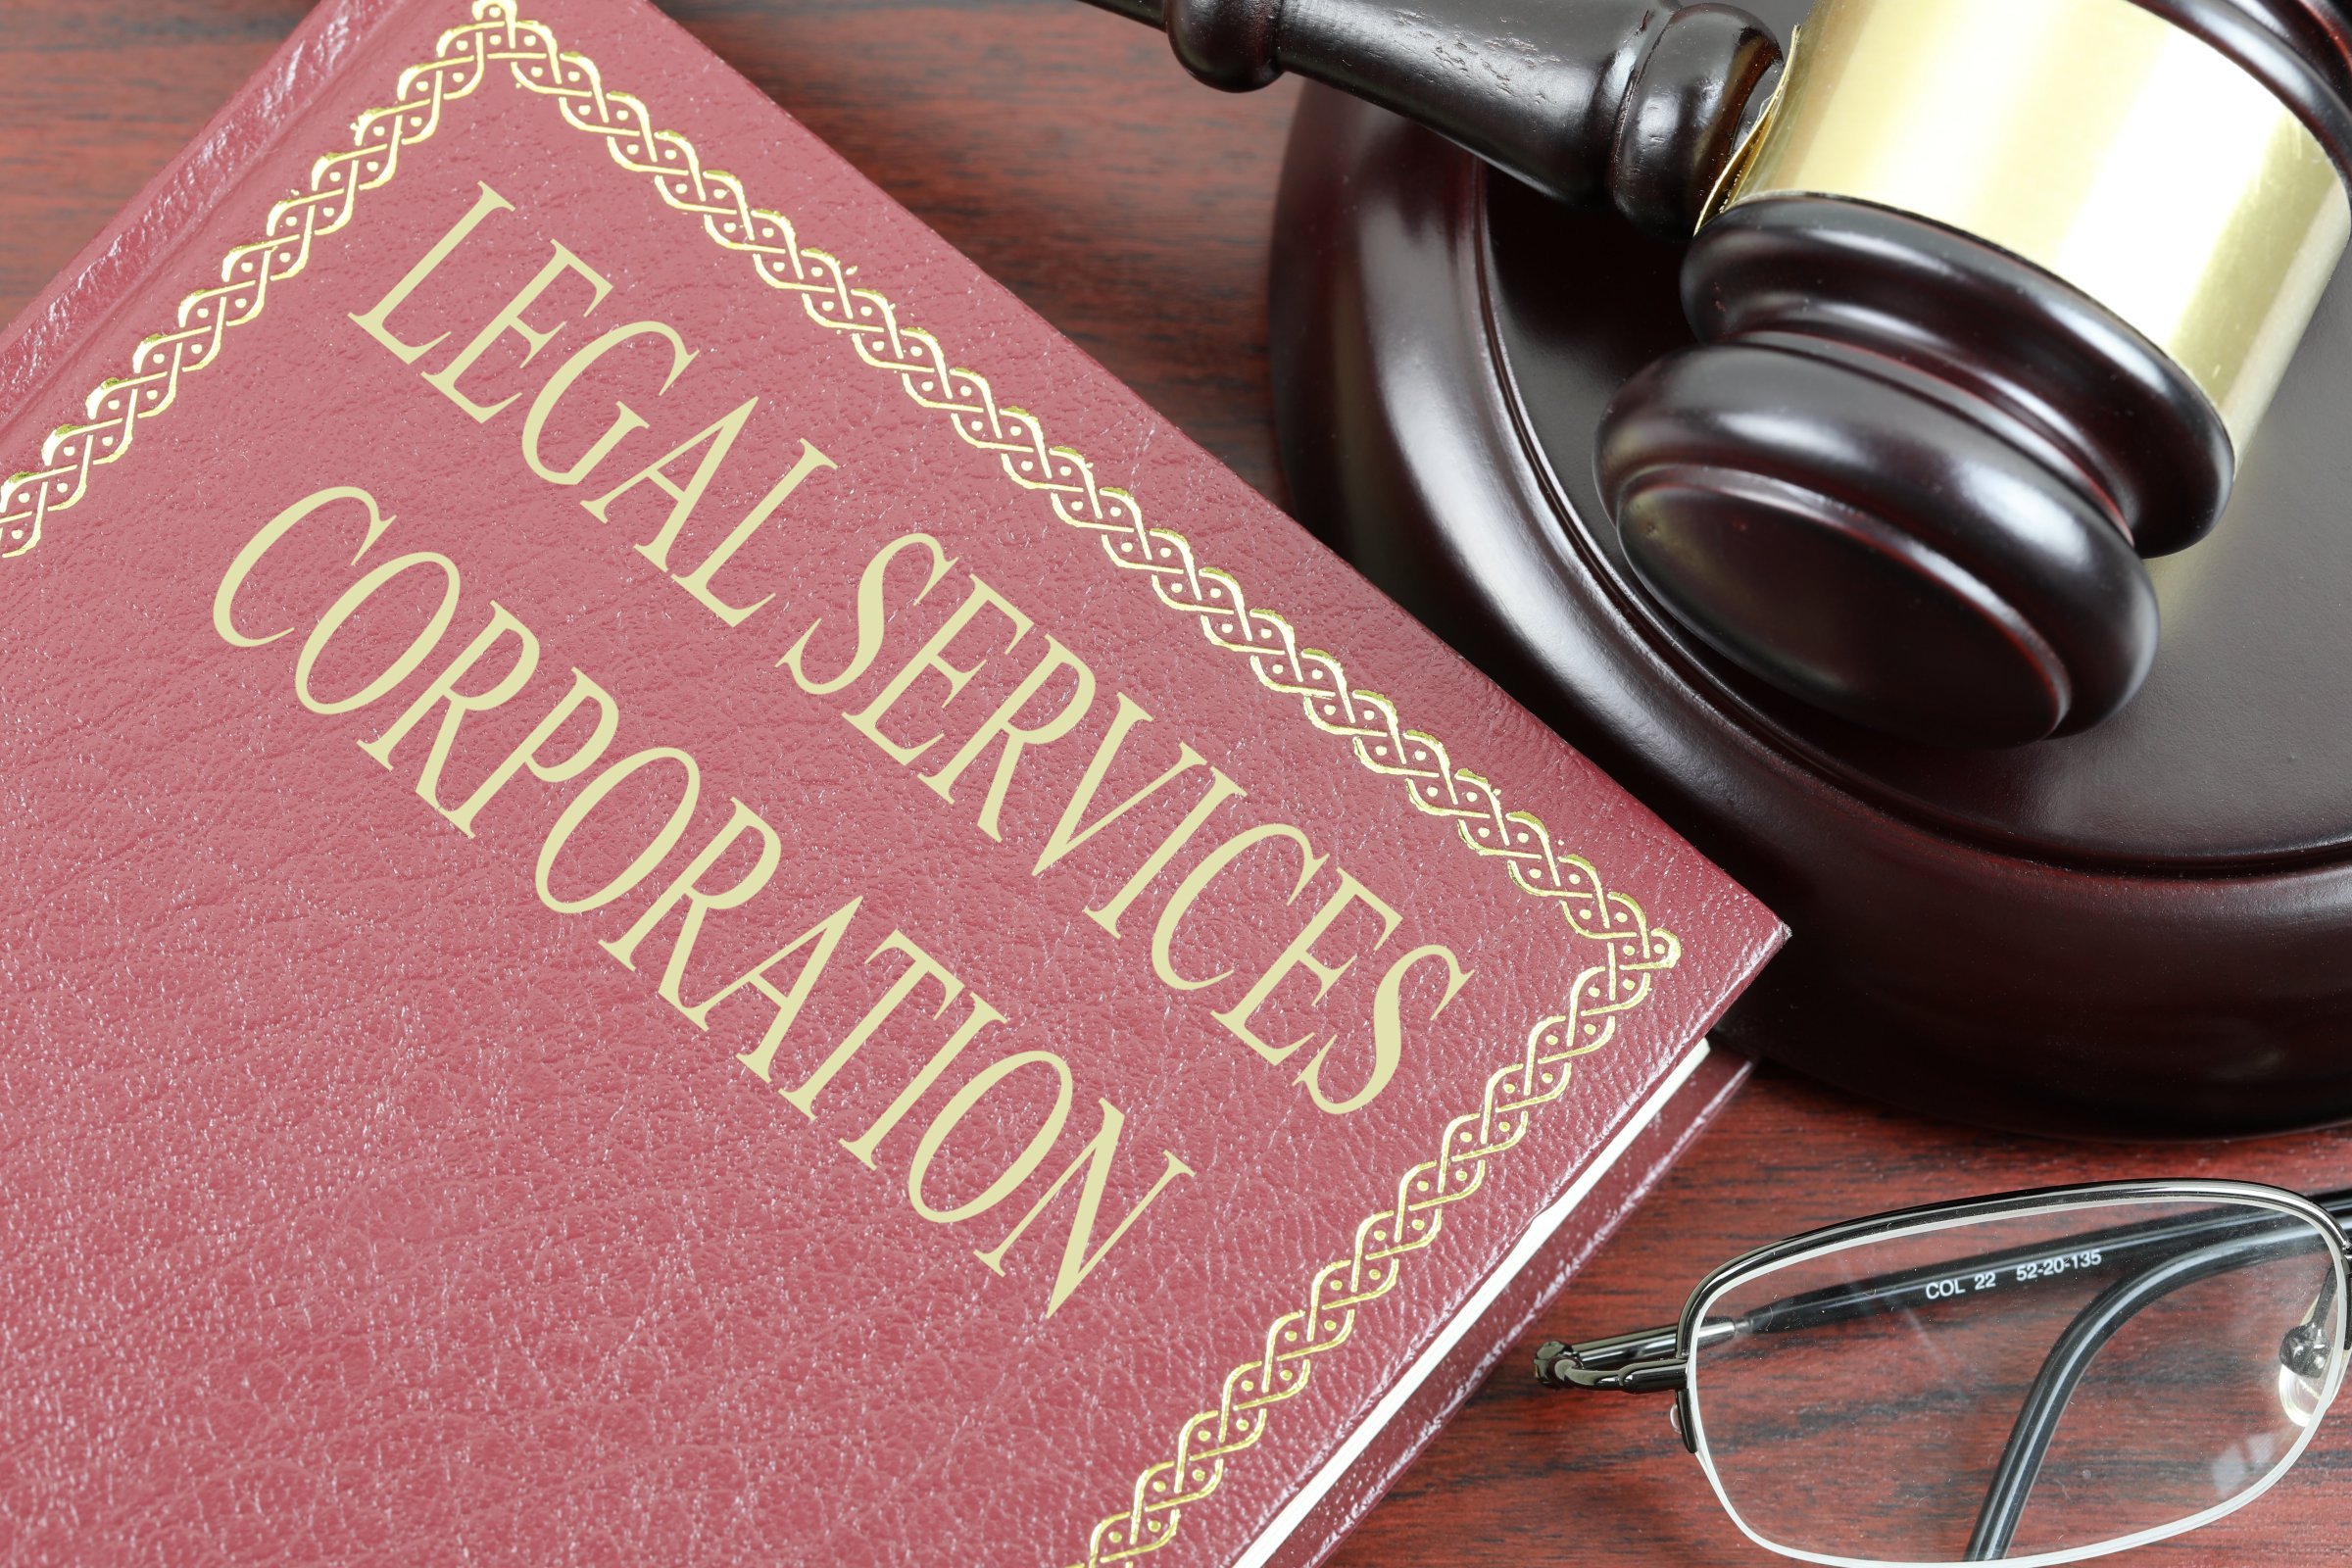 legal services corporation